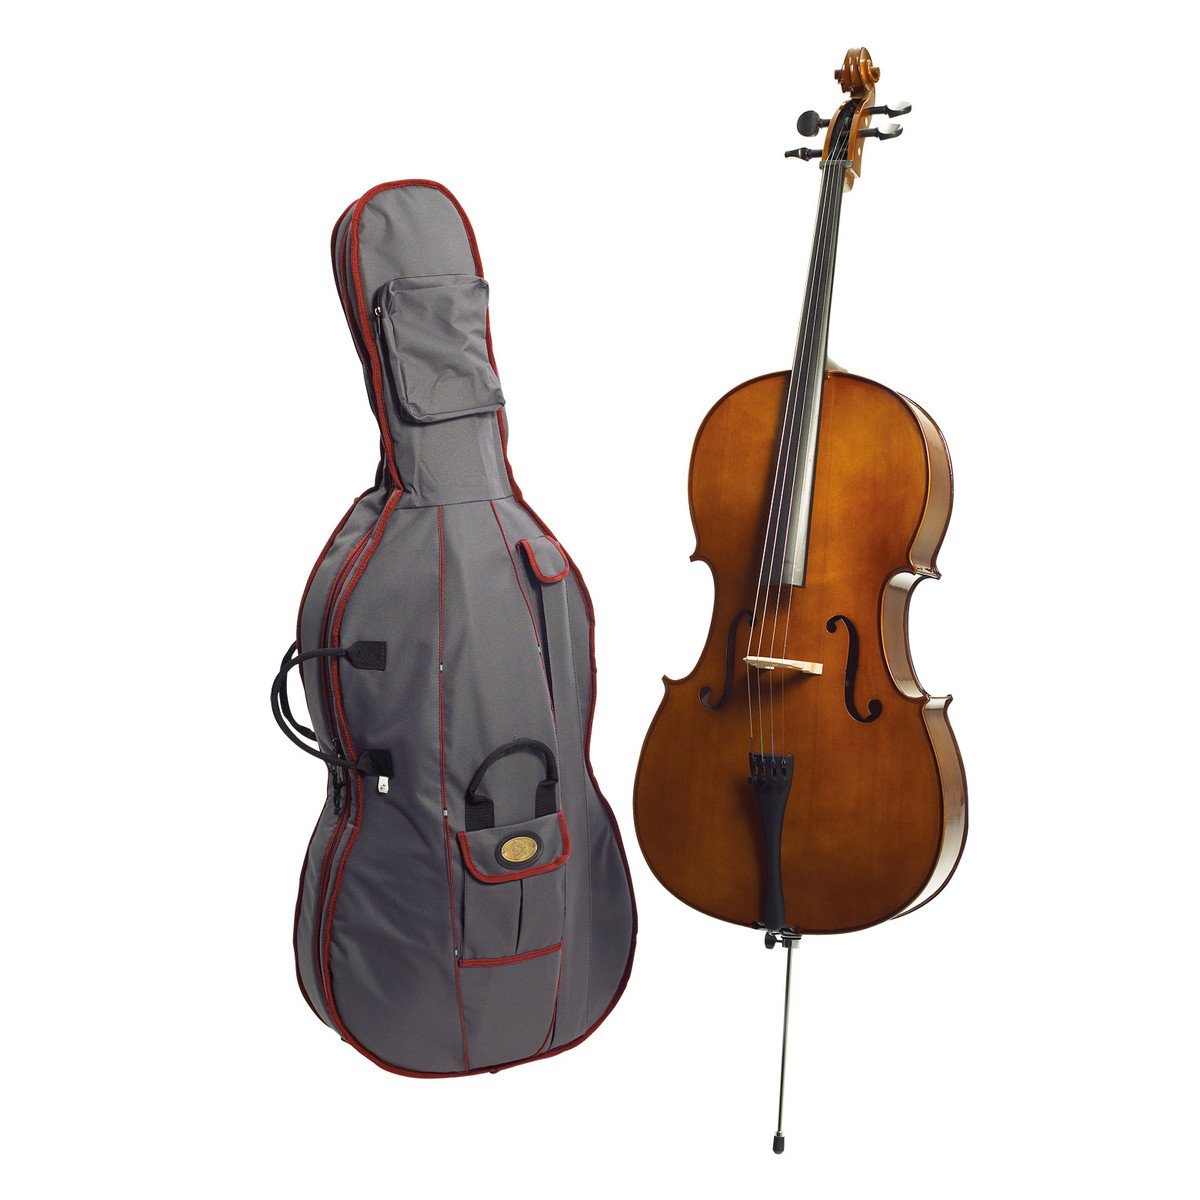 Le violoncelle - Les instruments de musique